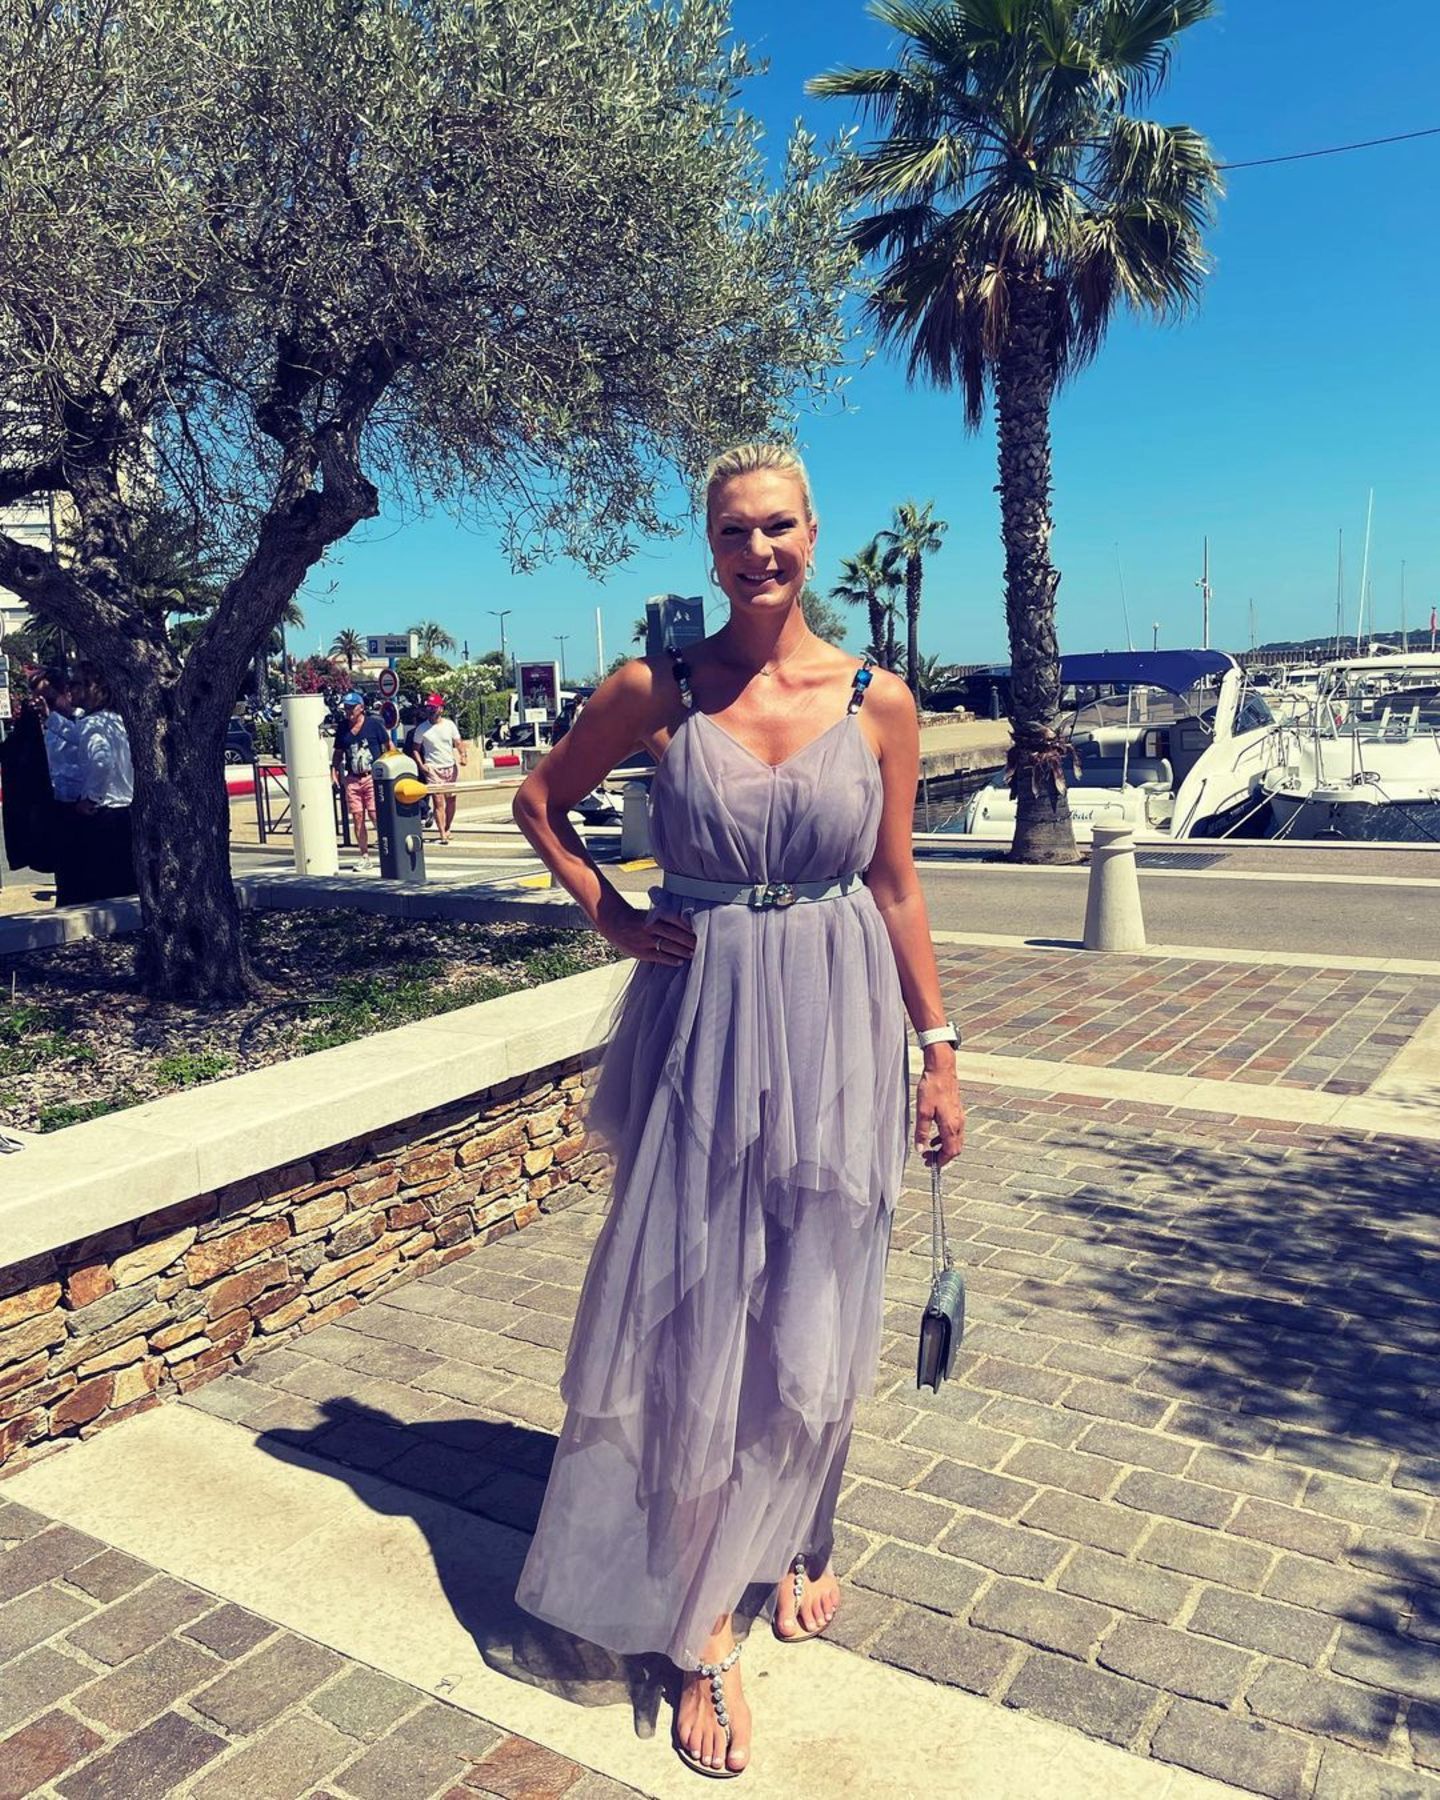 Maria Hoefl-Riesch ist in Hochzeitslaune: Im Hafen von Saint Tropez bezaubert der Ex-Ski-Star in einem luftig-schönen Glamour-Look von Aigner. Perfekt für eine Hochzeitsfeier im Sommer. 